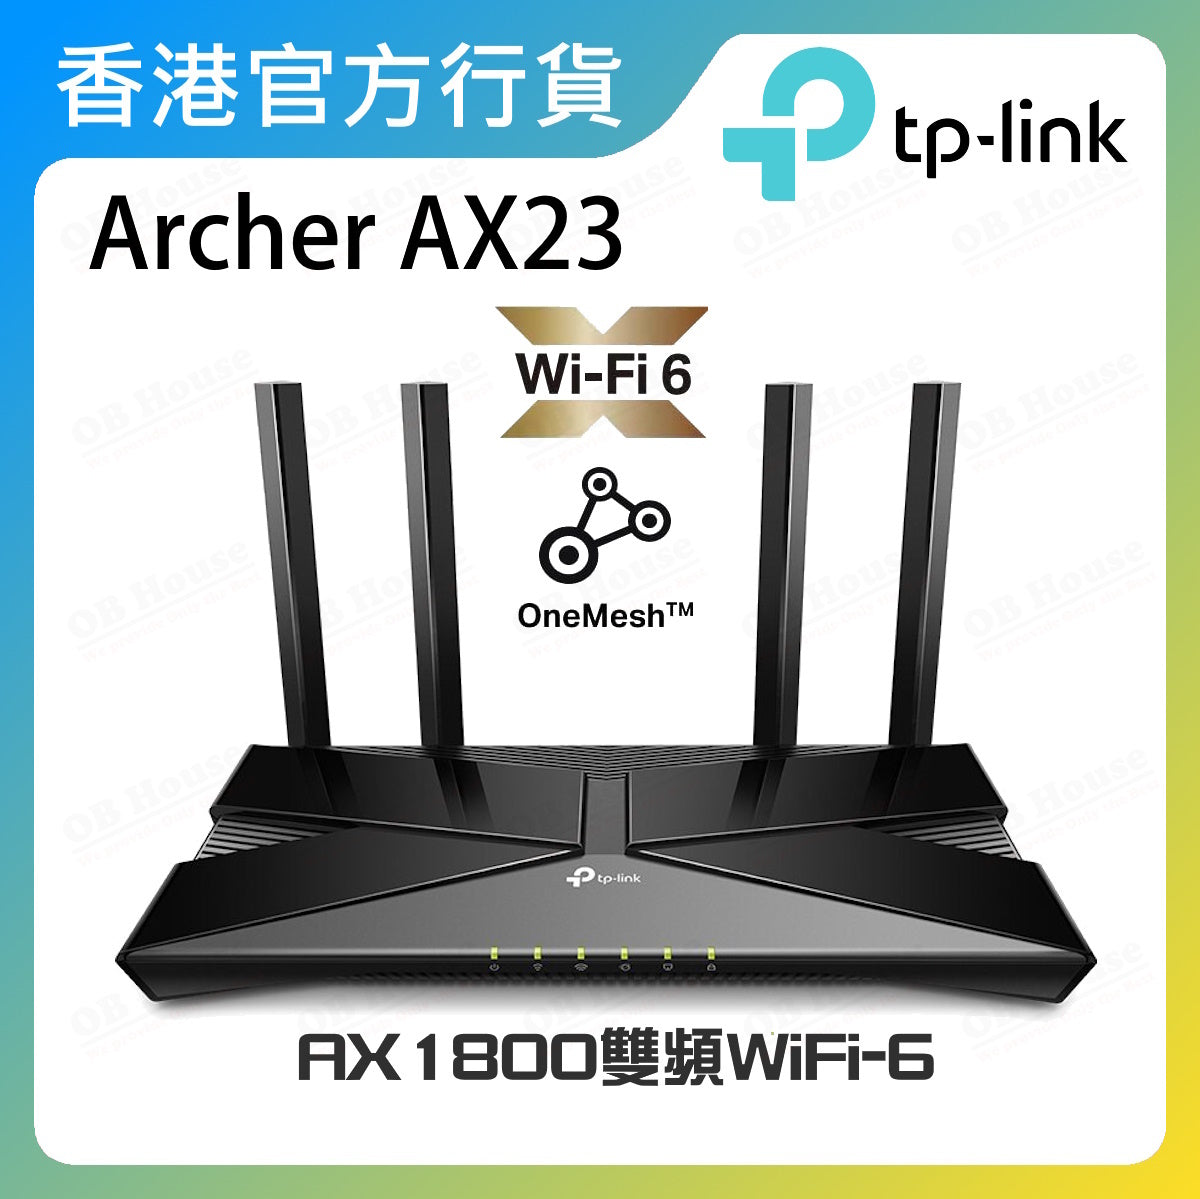 Archer AX23 AX1800雙頻Wi-Fi 6路由器 / 分享器